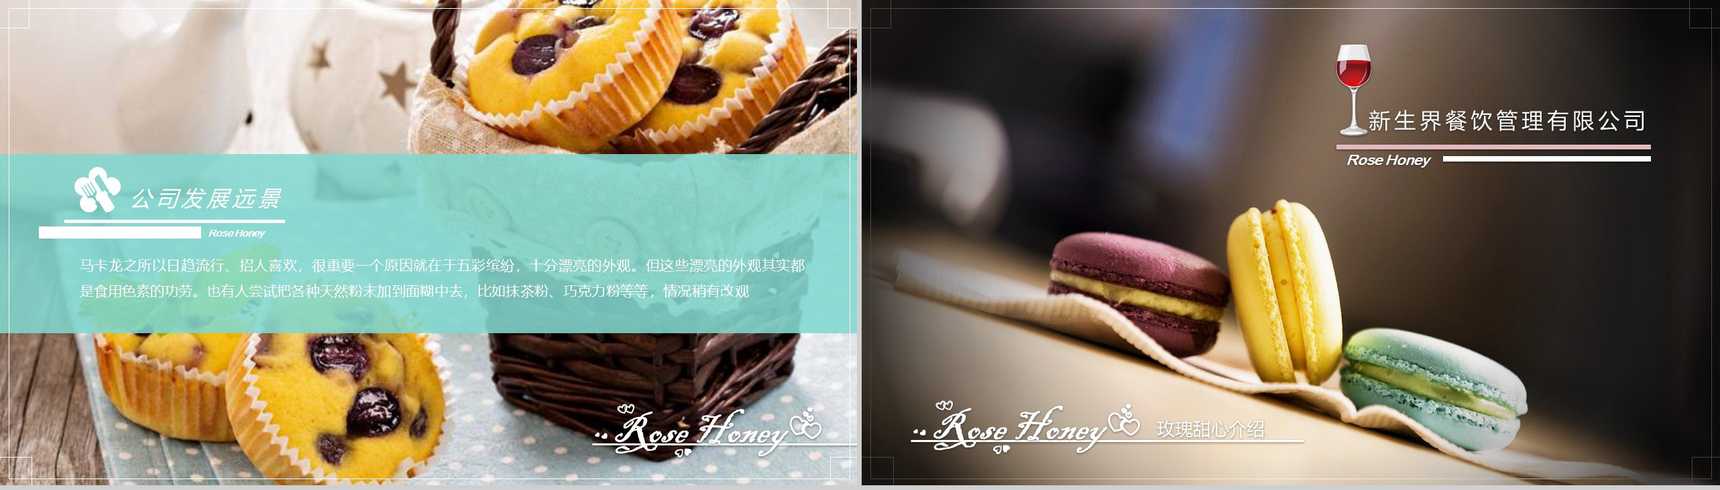 简约商务蛋糕餐饮公司宣传推广PPT模板-5